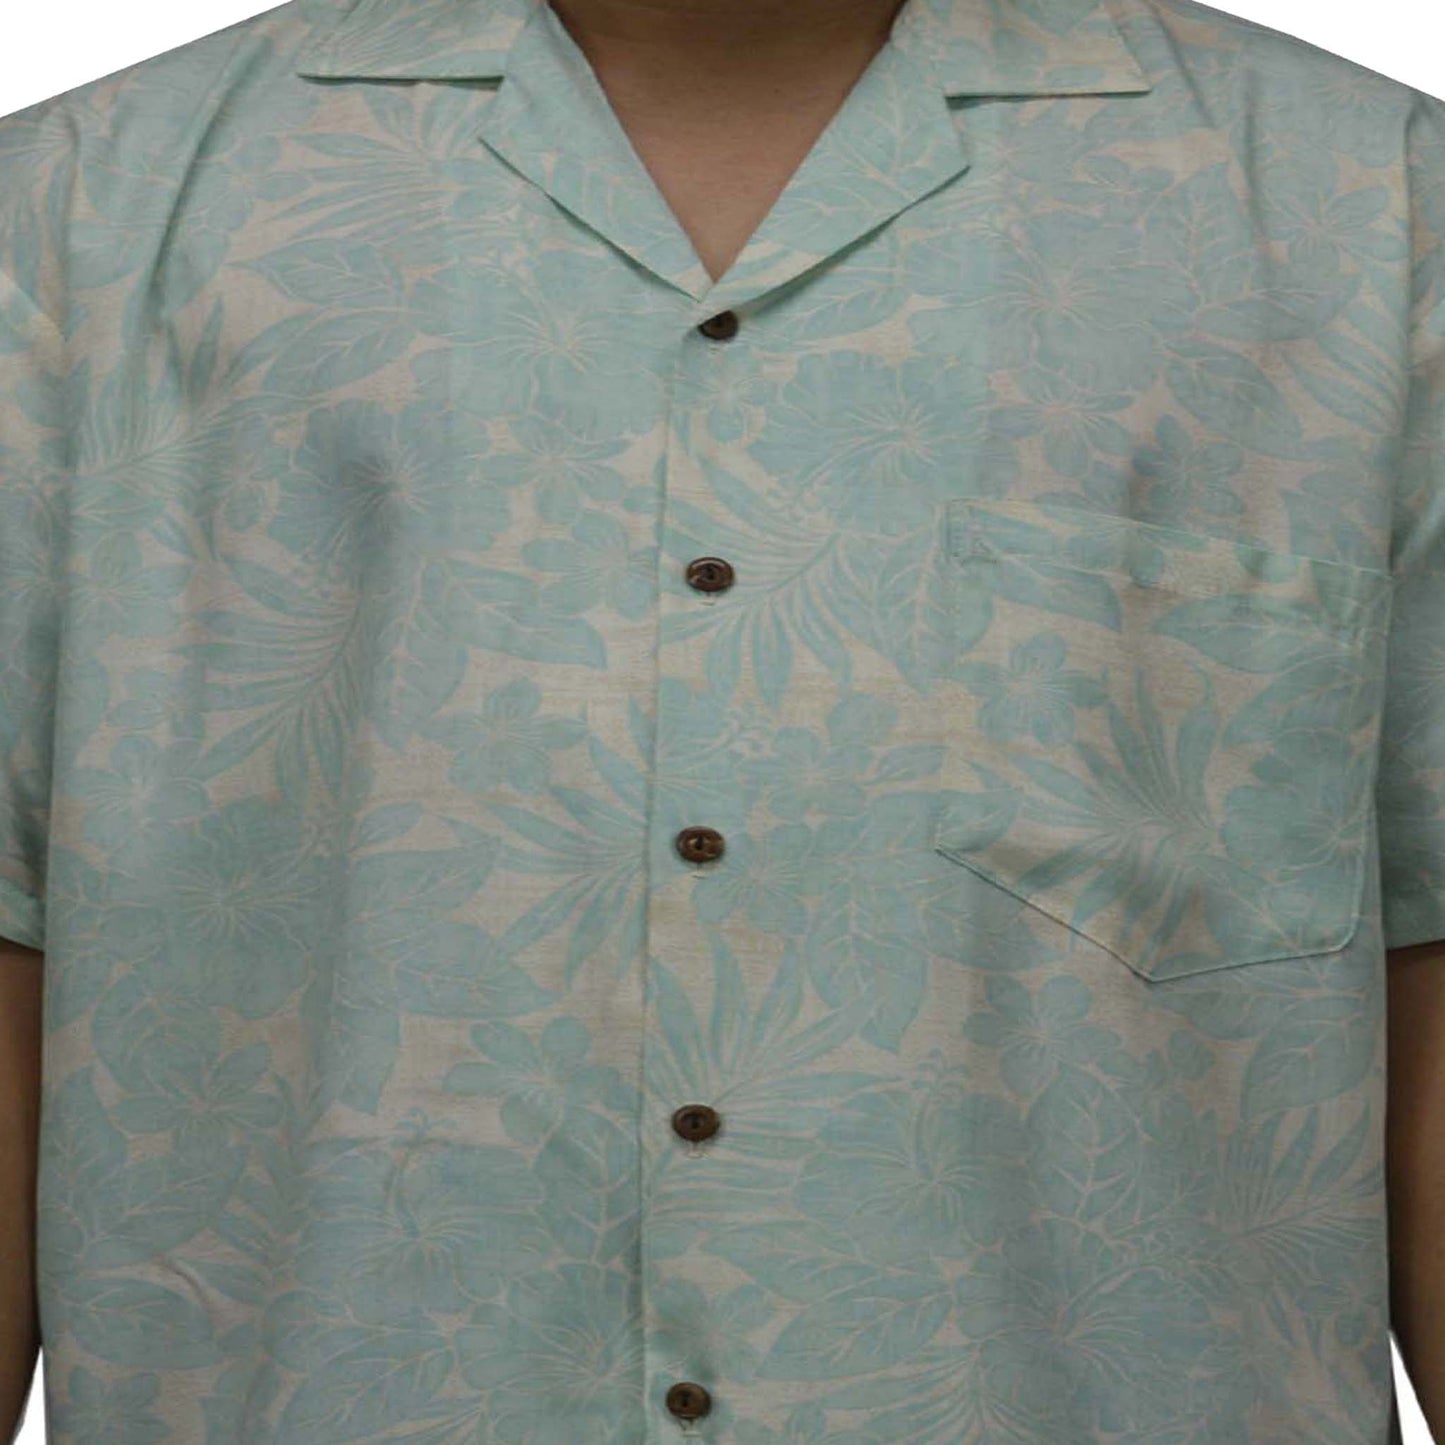 Locally made in Hawaii: Rayon Hawaiian Shirt Manoa Orchid -Green